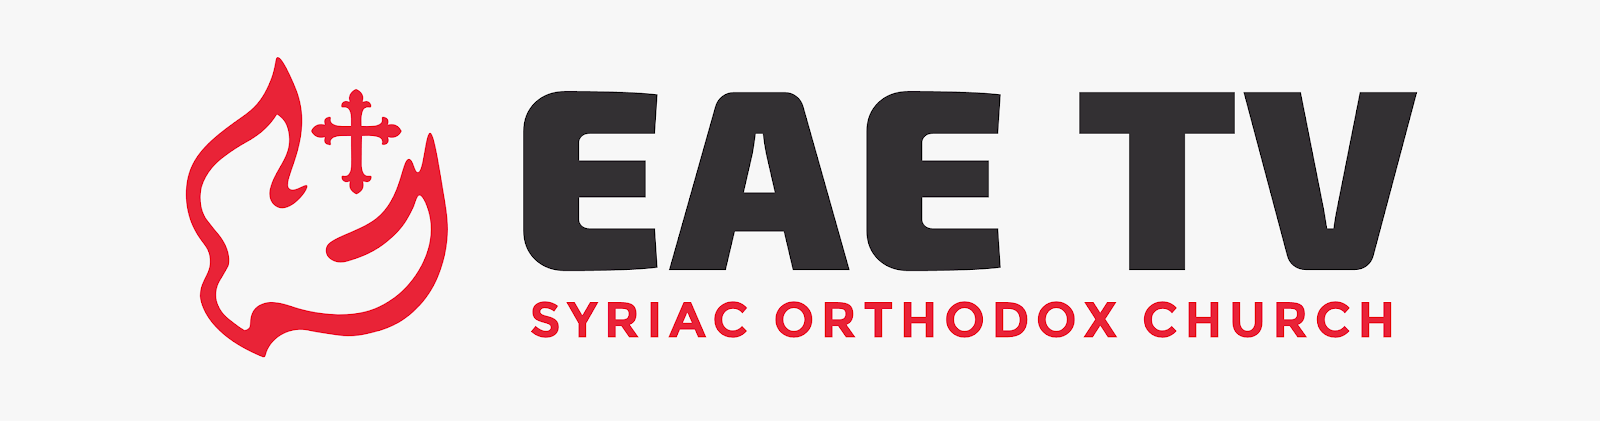 EAE TV - Syriac Orthodox Church™